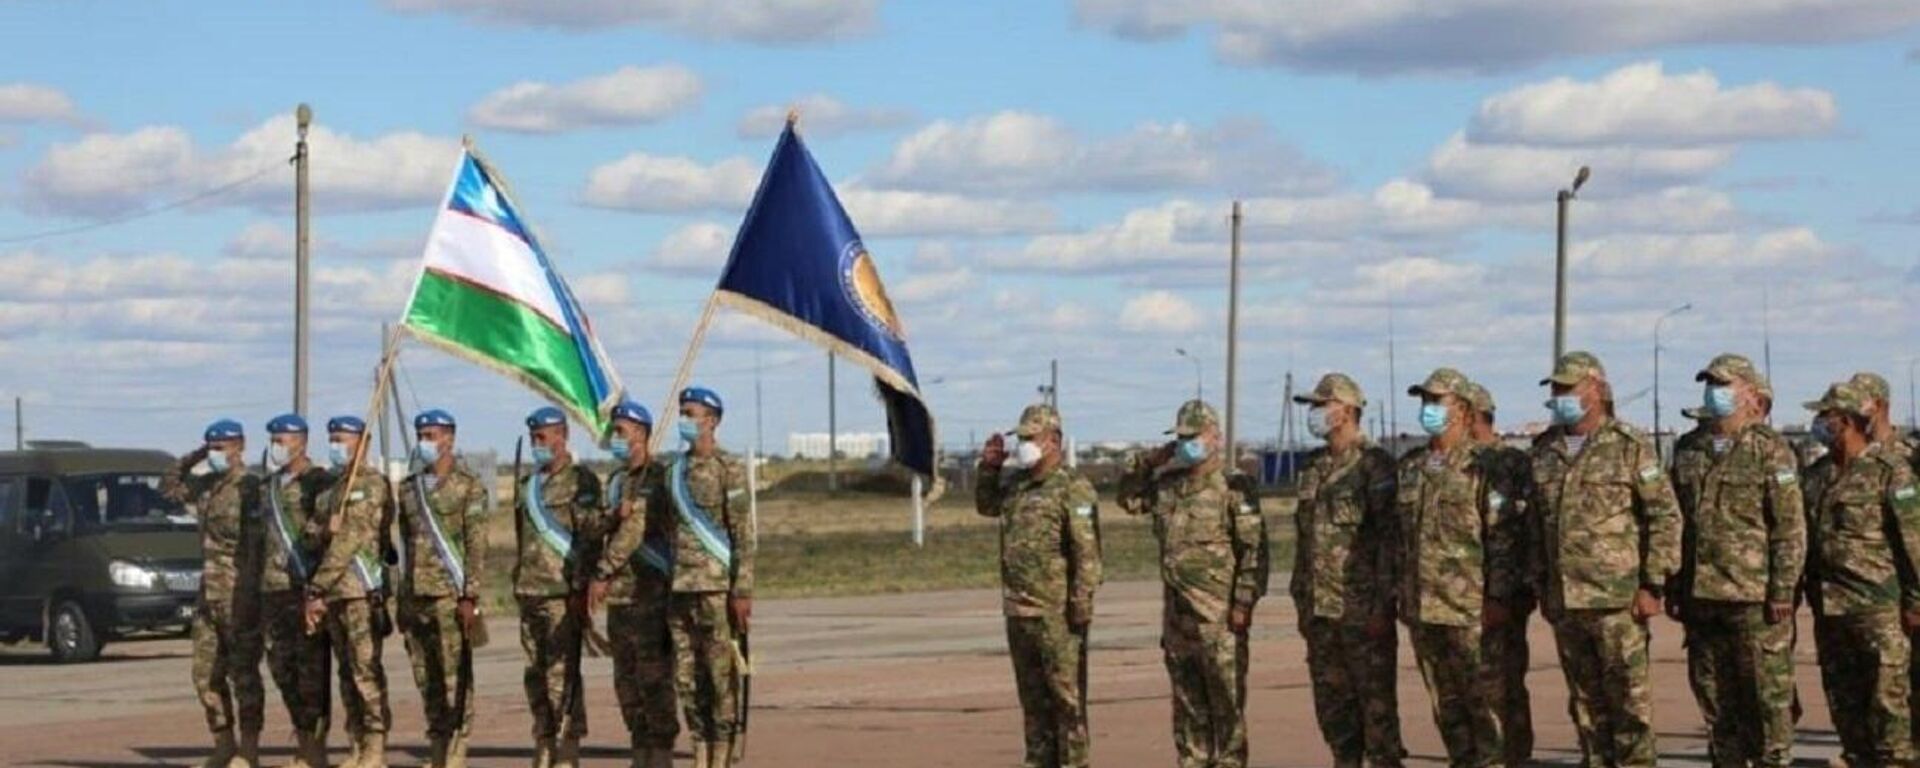 Военные Узбекистана участвуют в учениях стран ШОС Мирная миссия - Sputnik Ўзбекистон, 1920, 13.09.2021